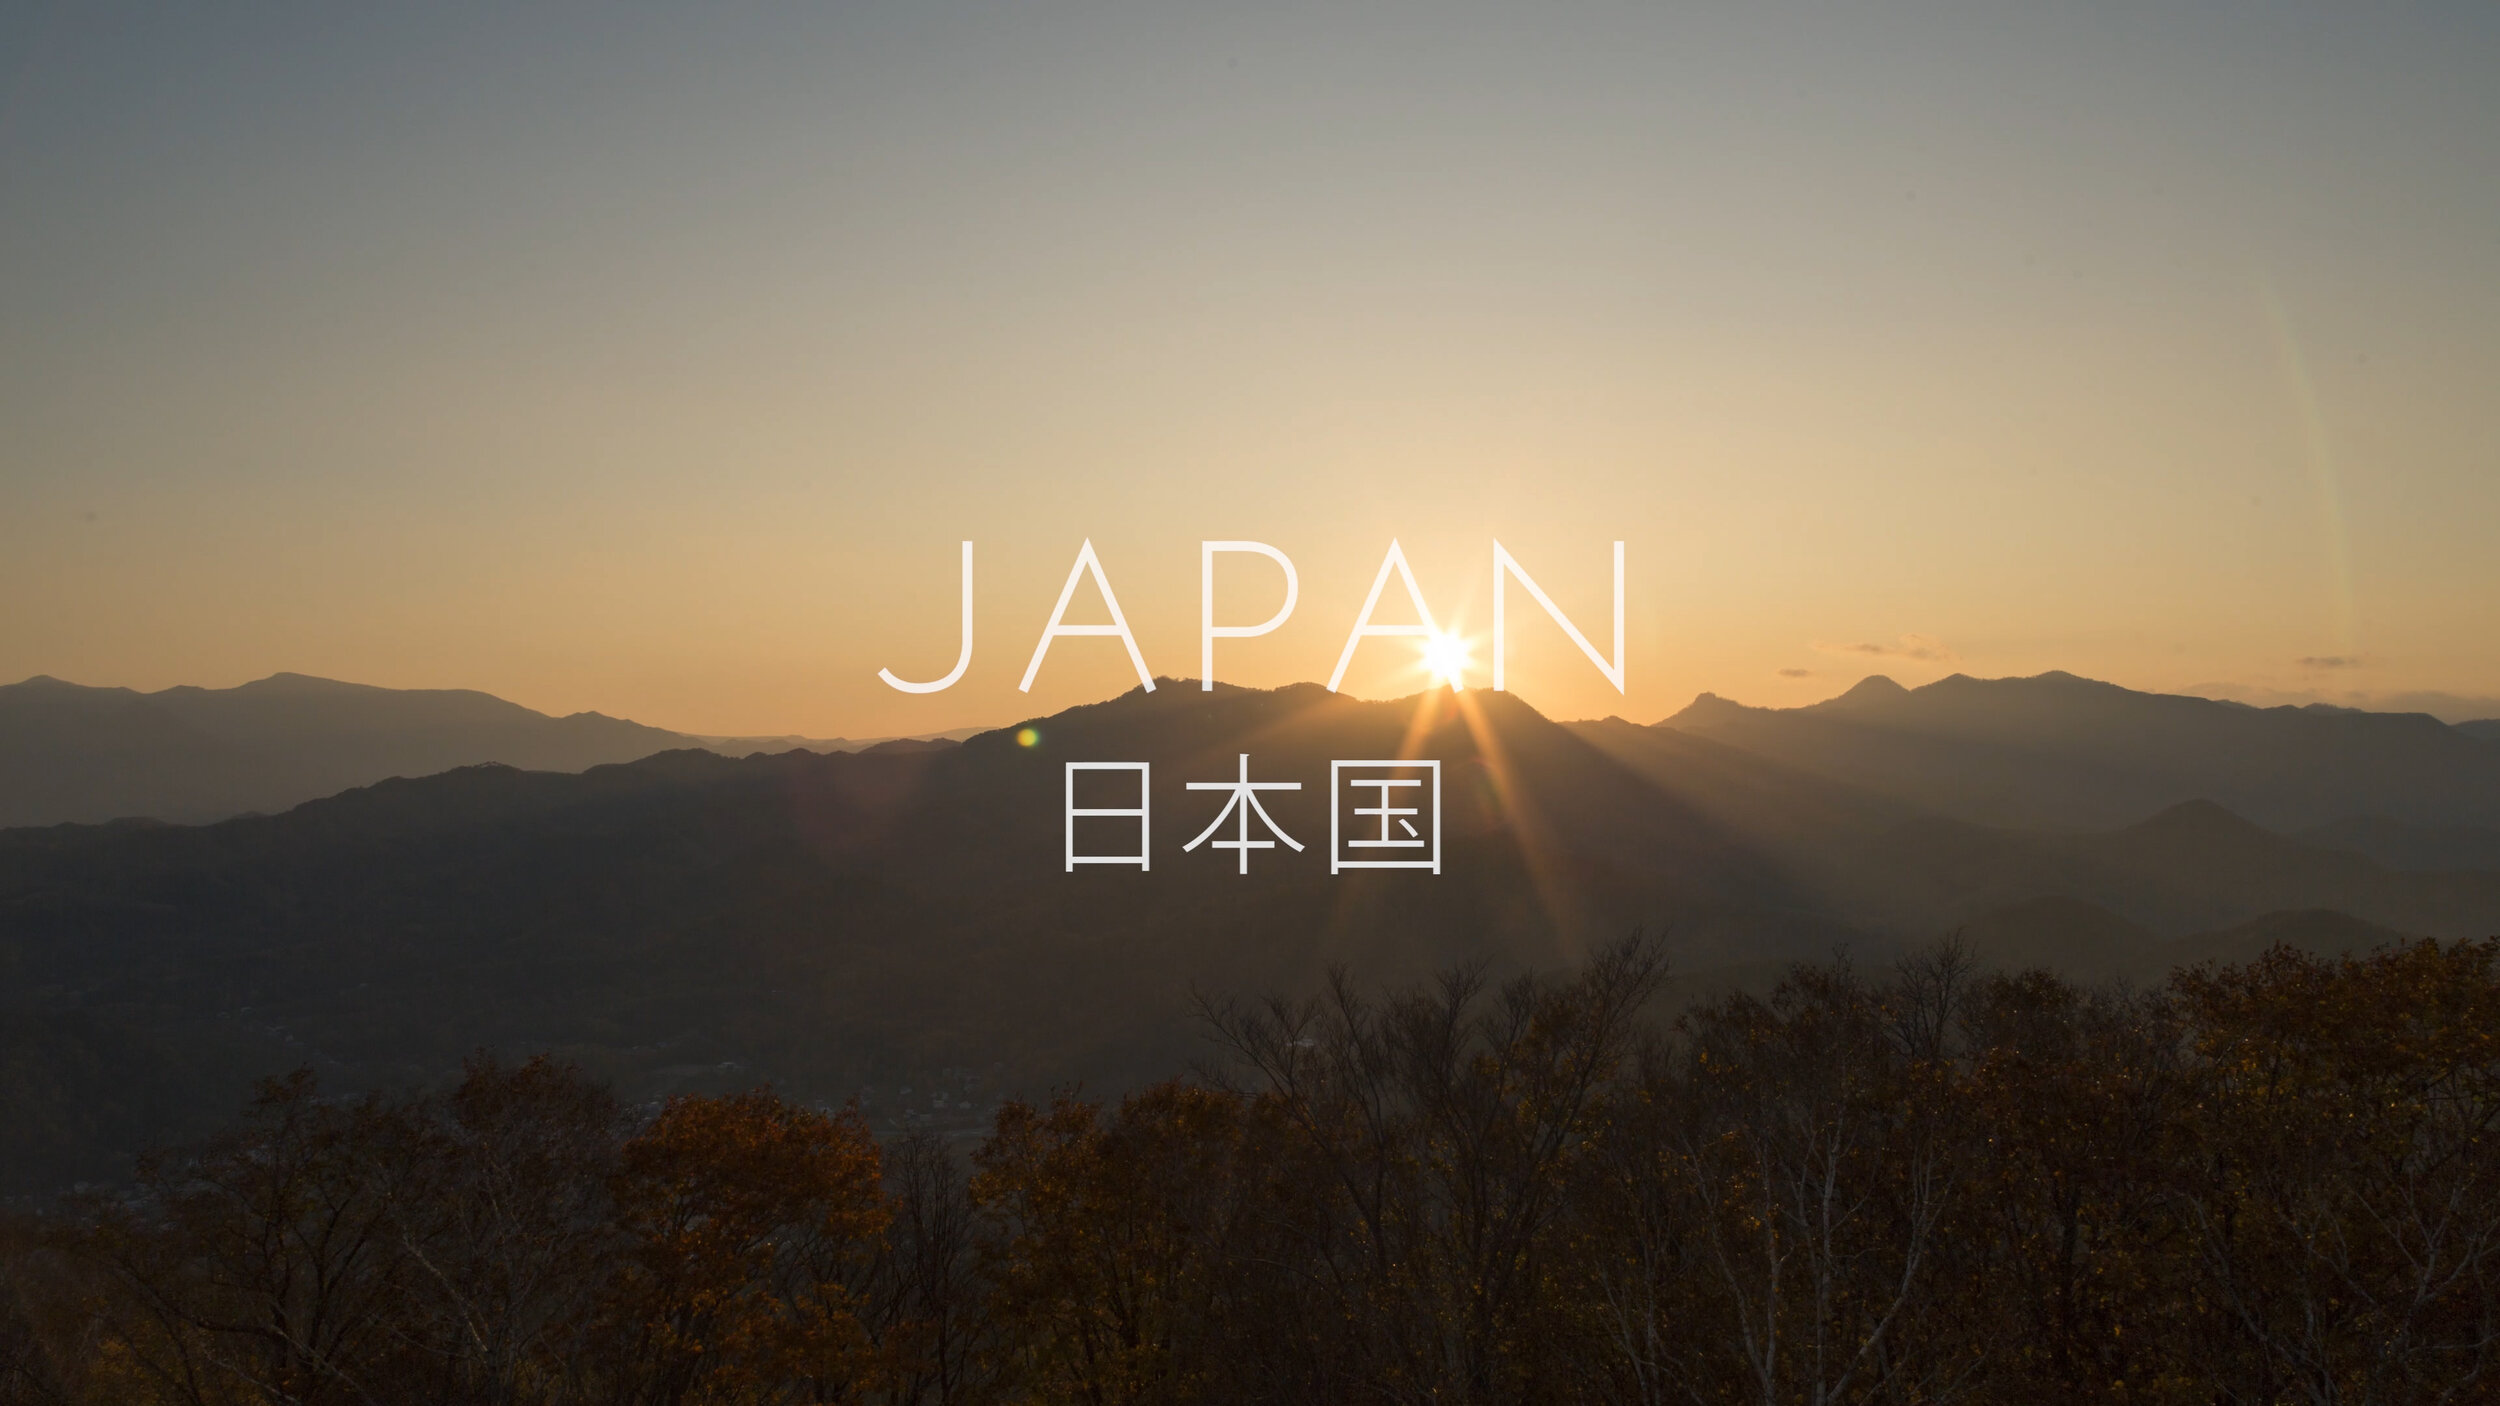 Japan 2019 Timelapse - 4K.jpg